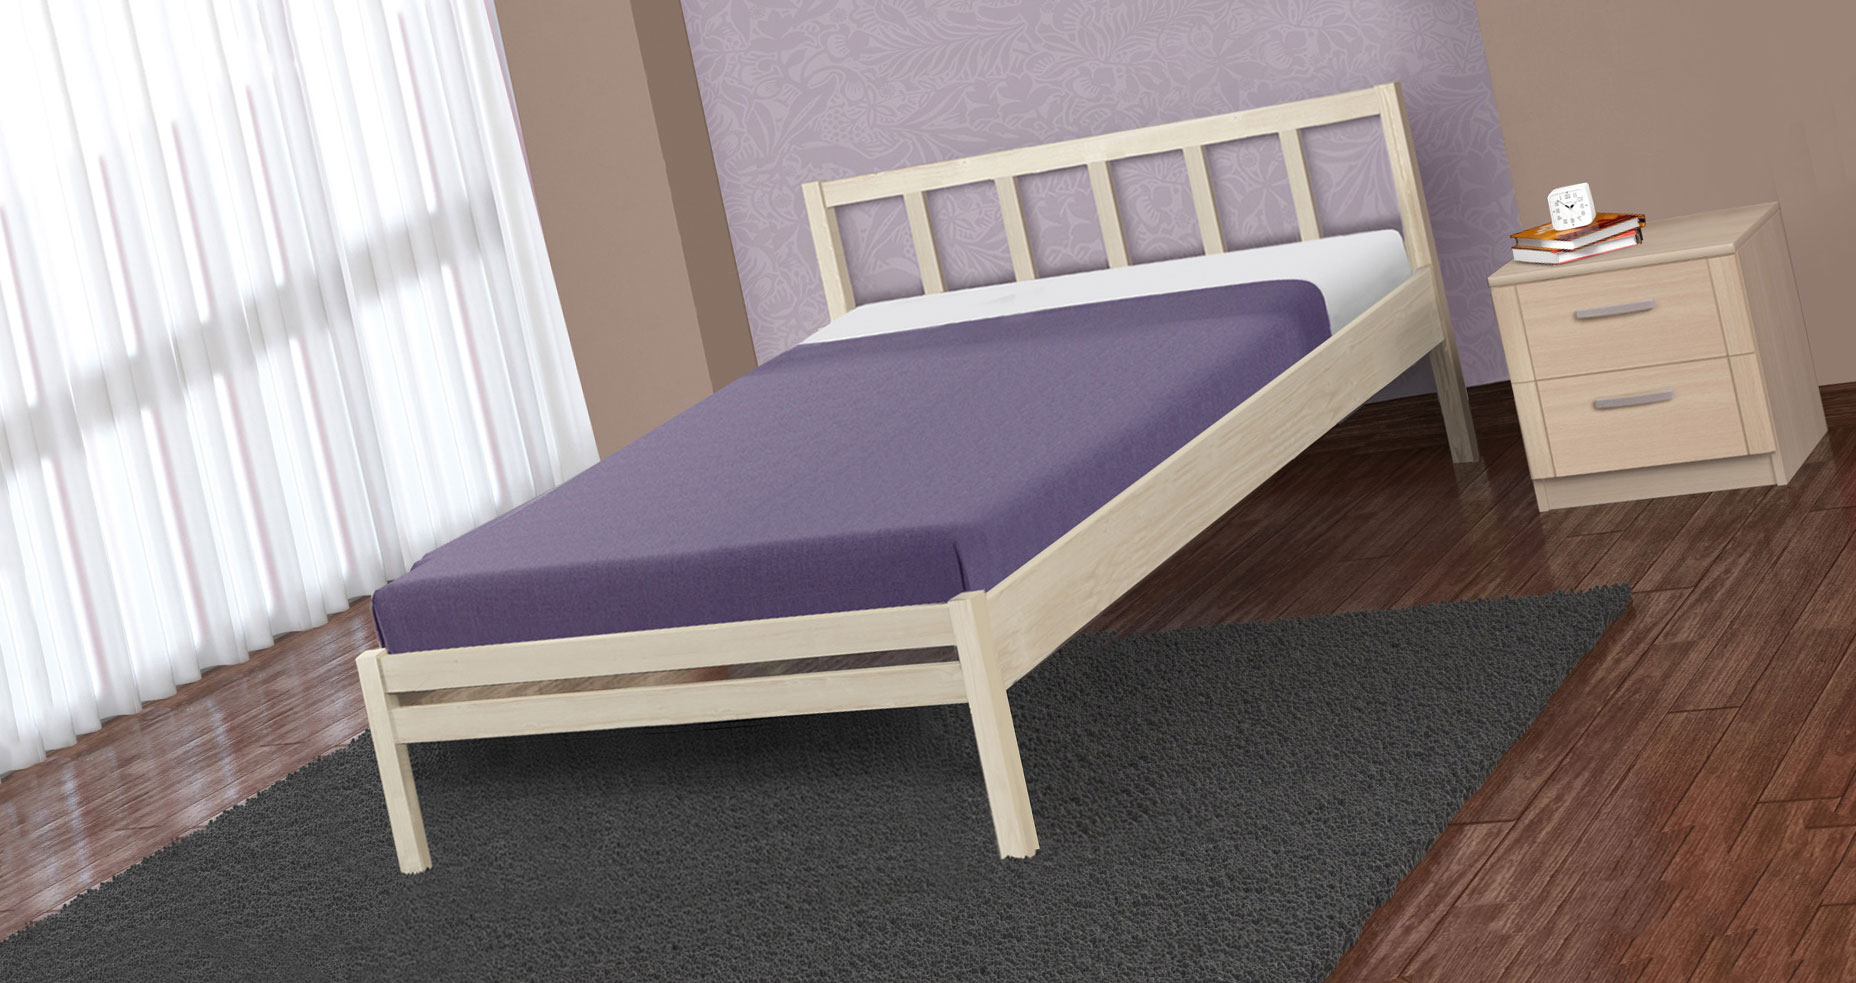 Деревянная односпальная кровать